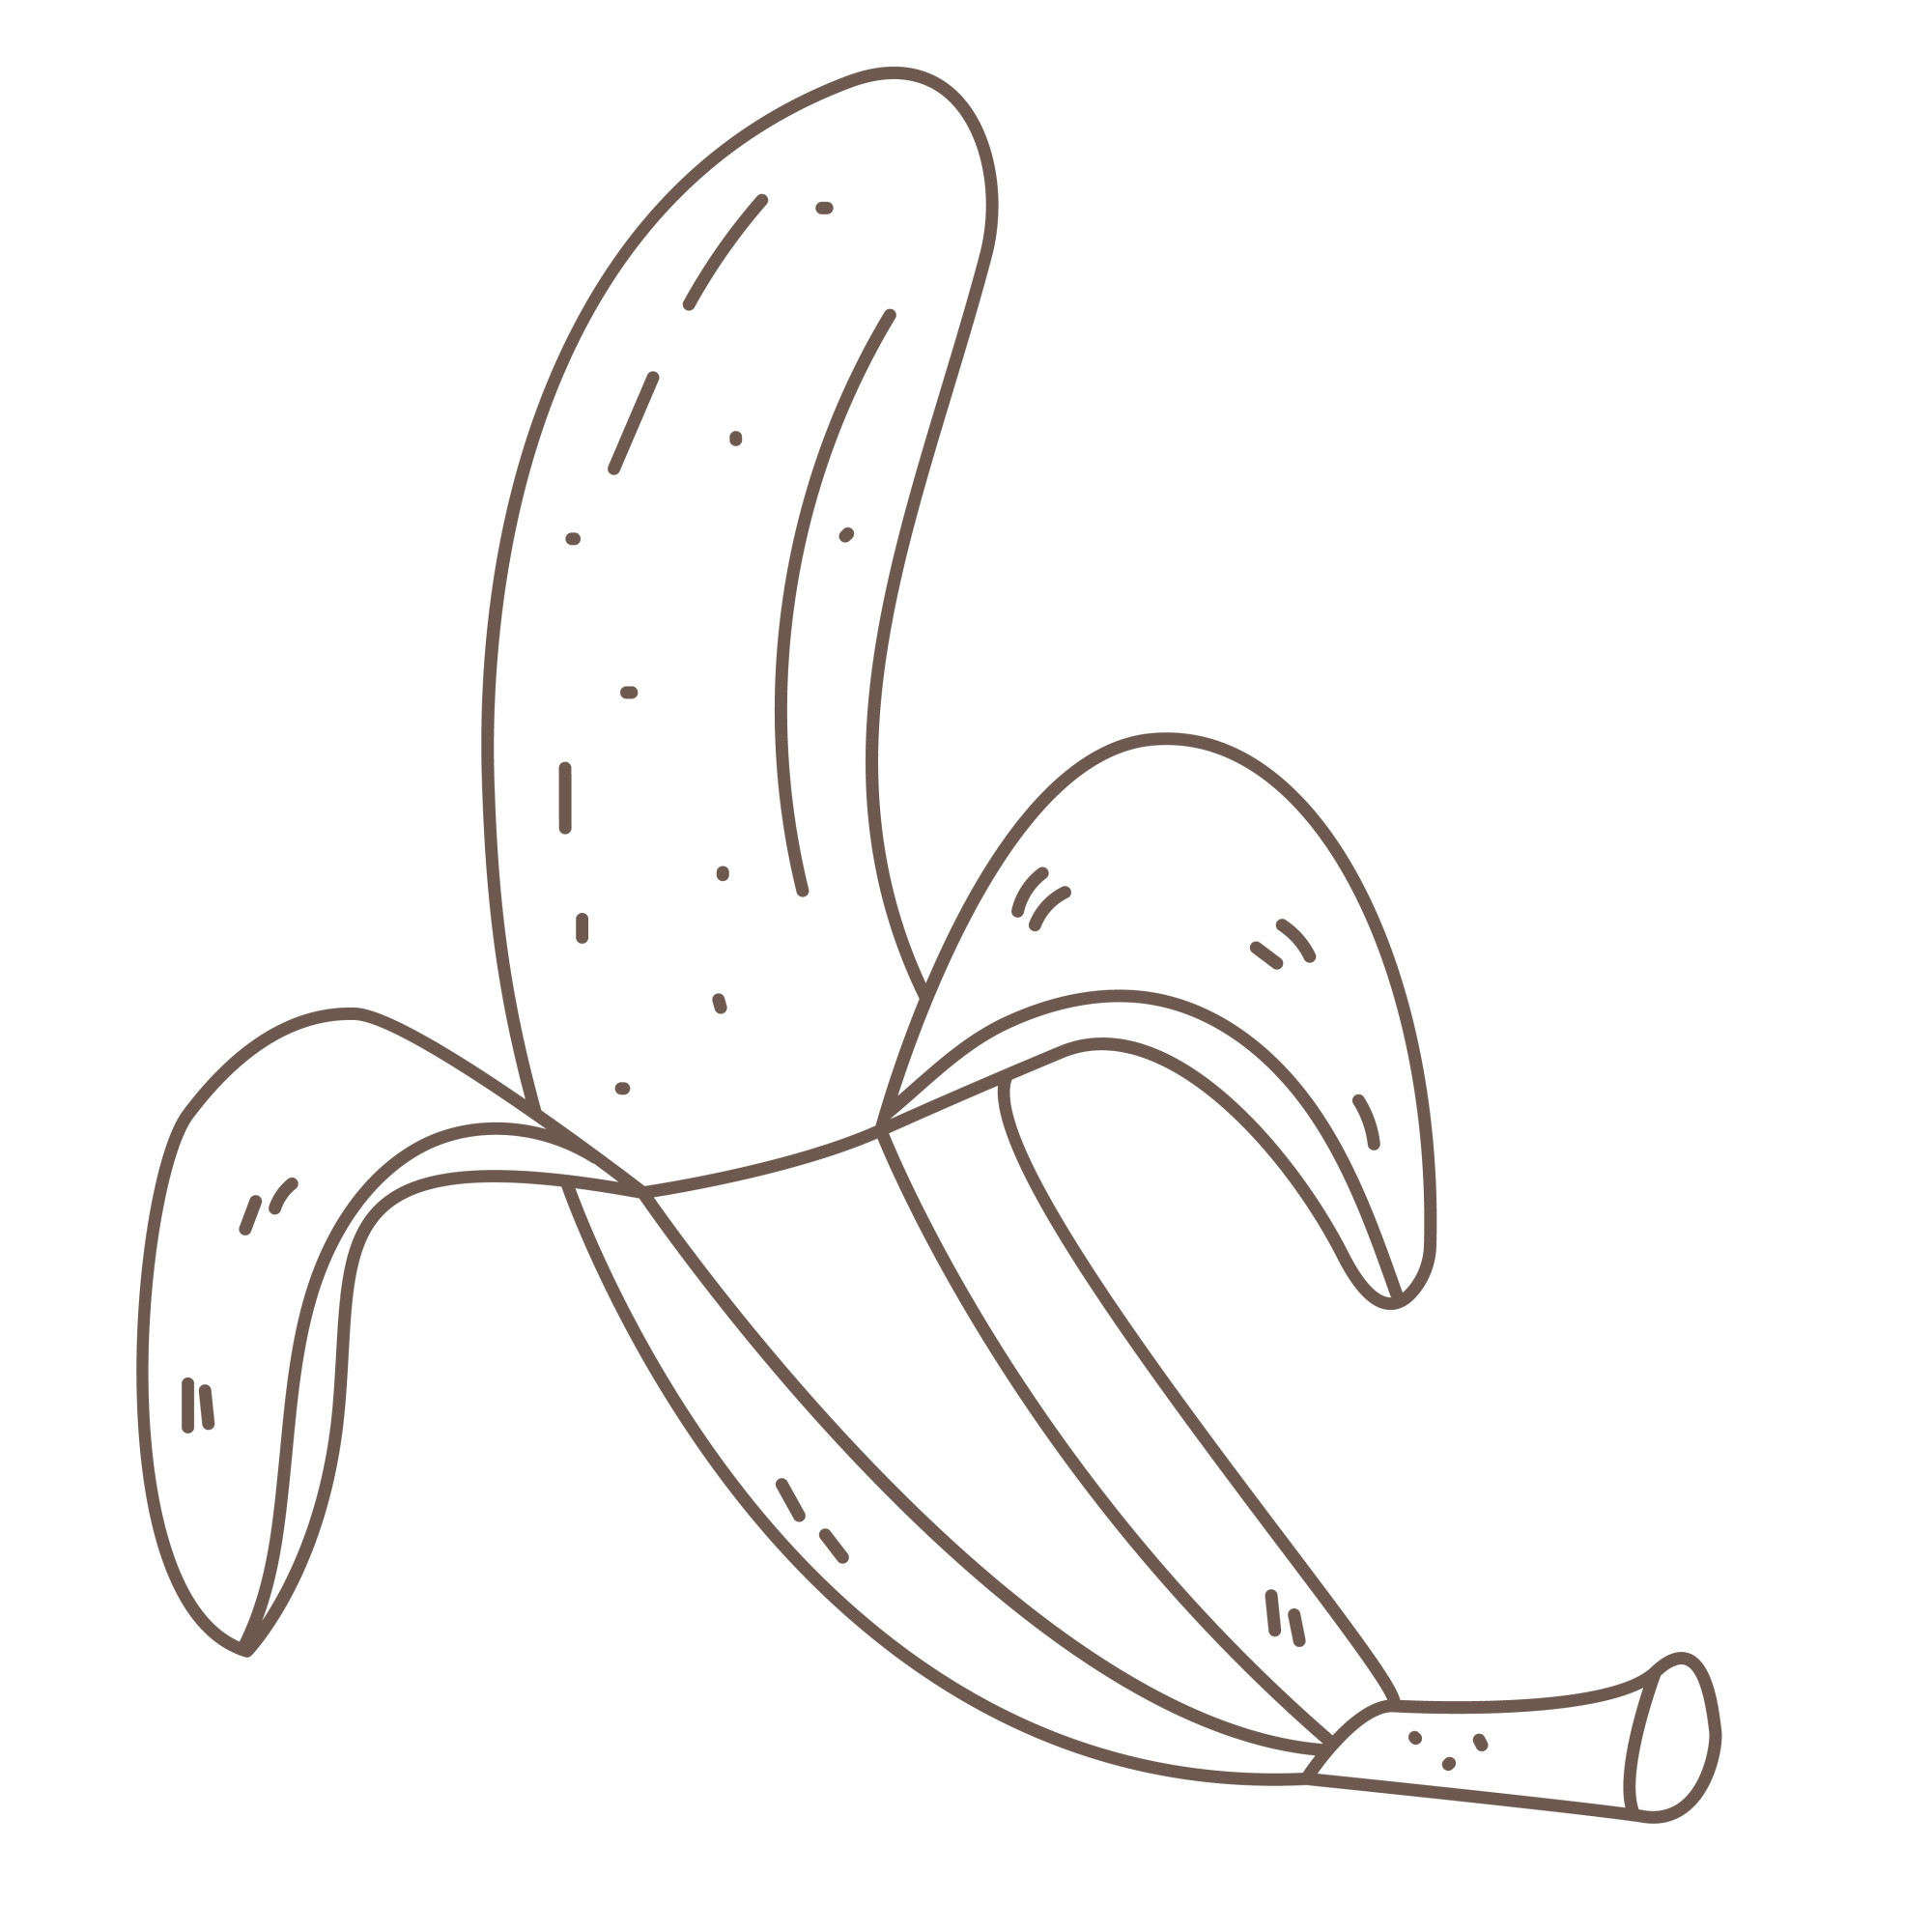 Раскраска для детей: раскрытый банан